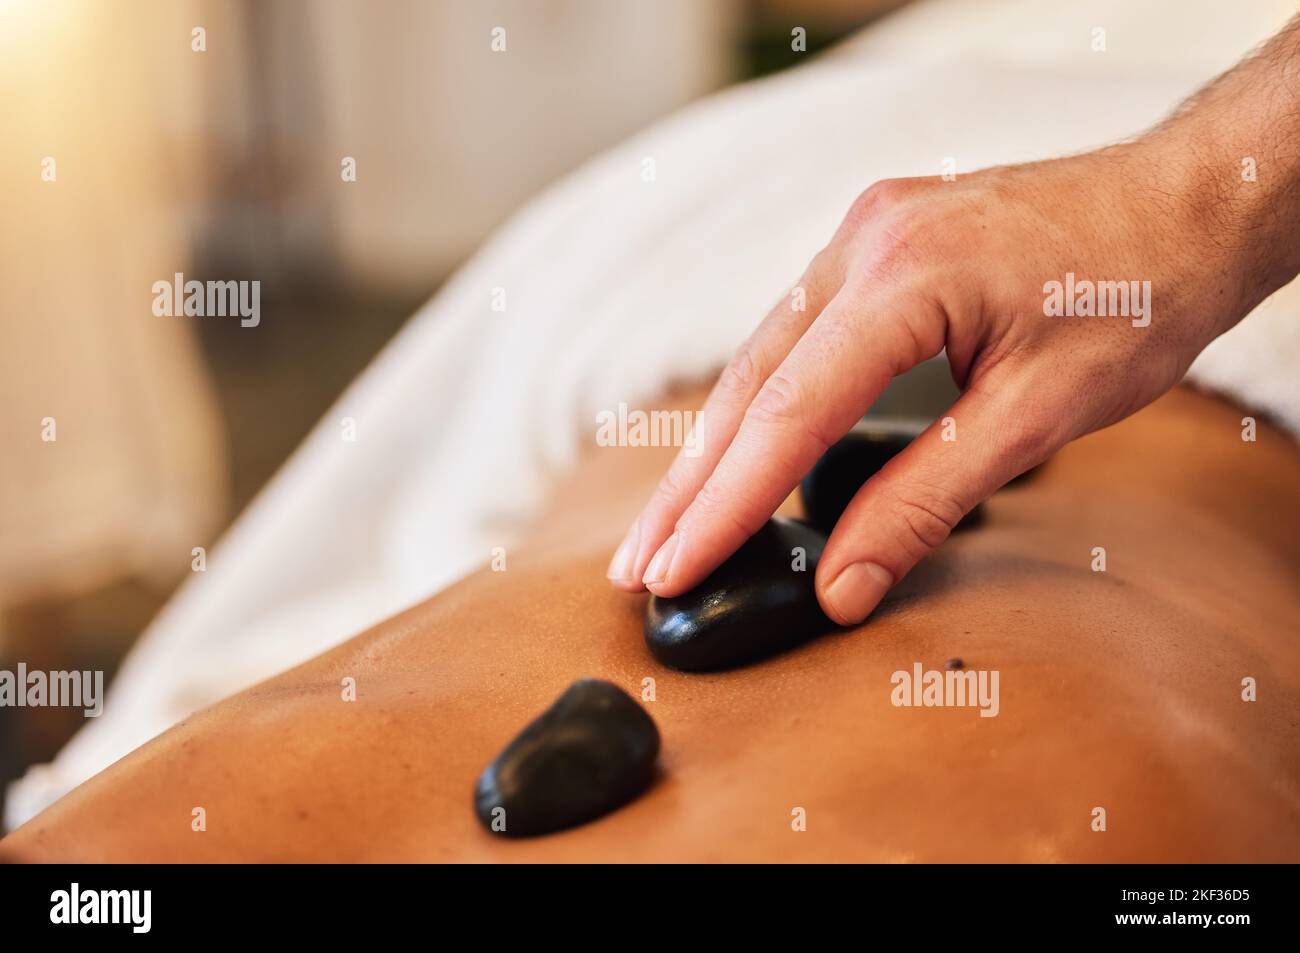 Massaggio con pietre calde, spa e cura della pelle per il benessere, la salute e la terapia fisica per rilassarsi nel lusso. Mente, corpo e spirito benessere con rock terapia Foto Stock